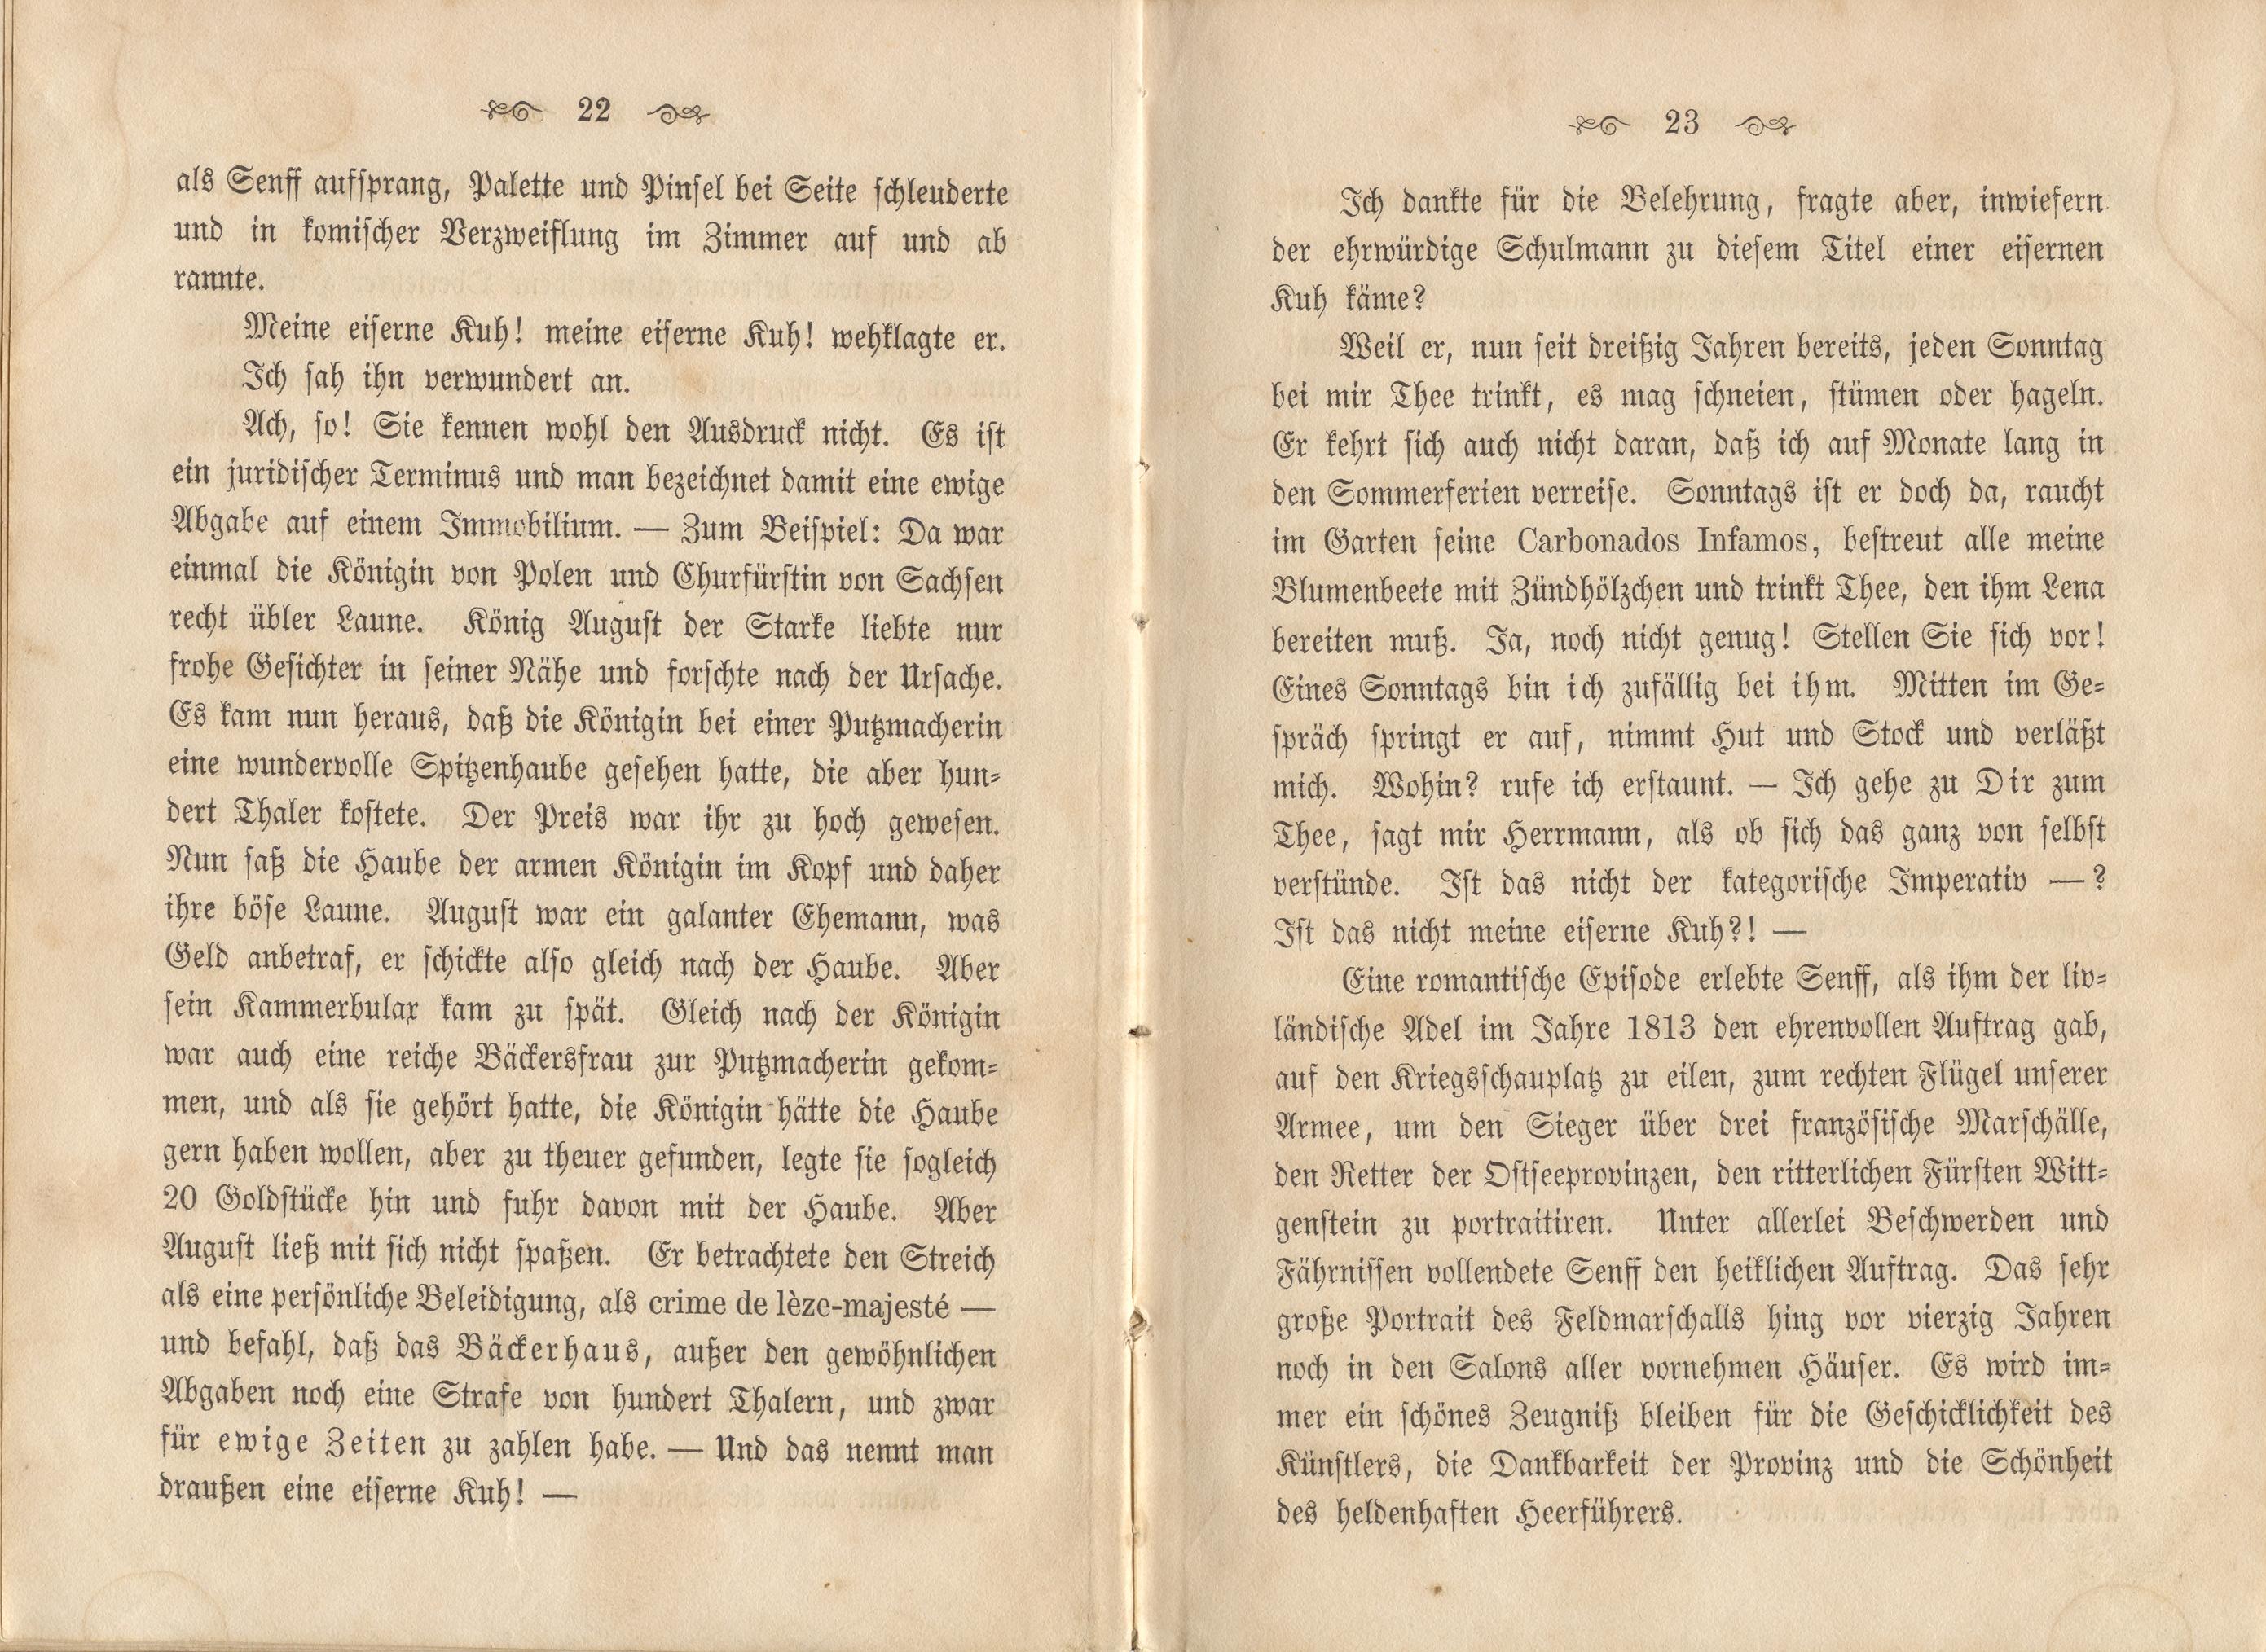 Dorpats Grössen und Typen (1868) | 14. (22-23) Main body of text